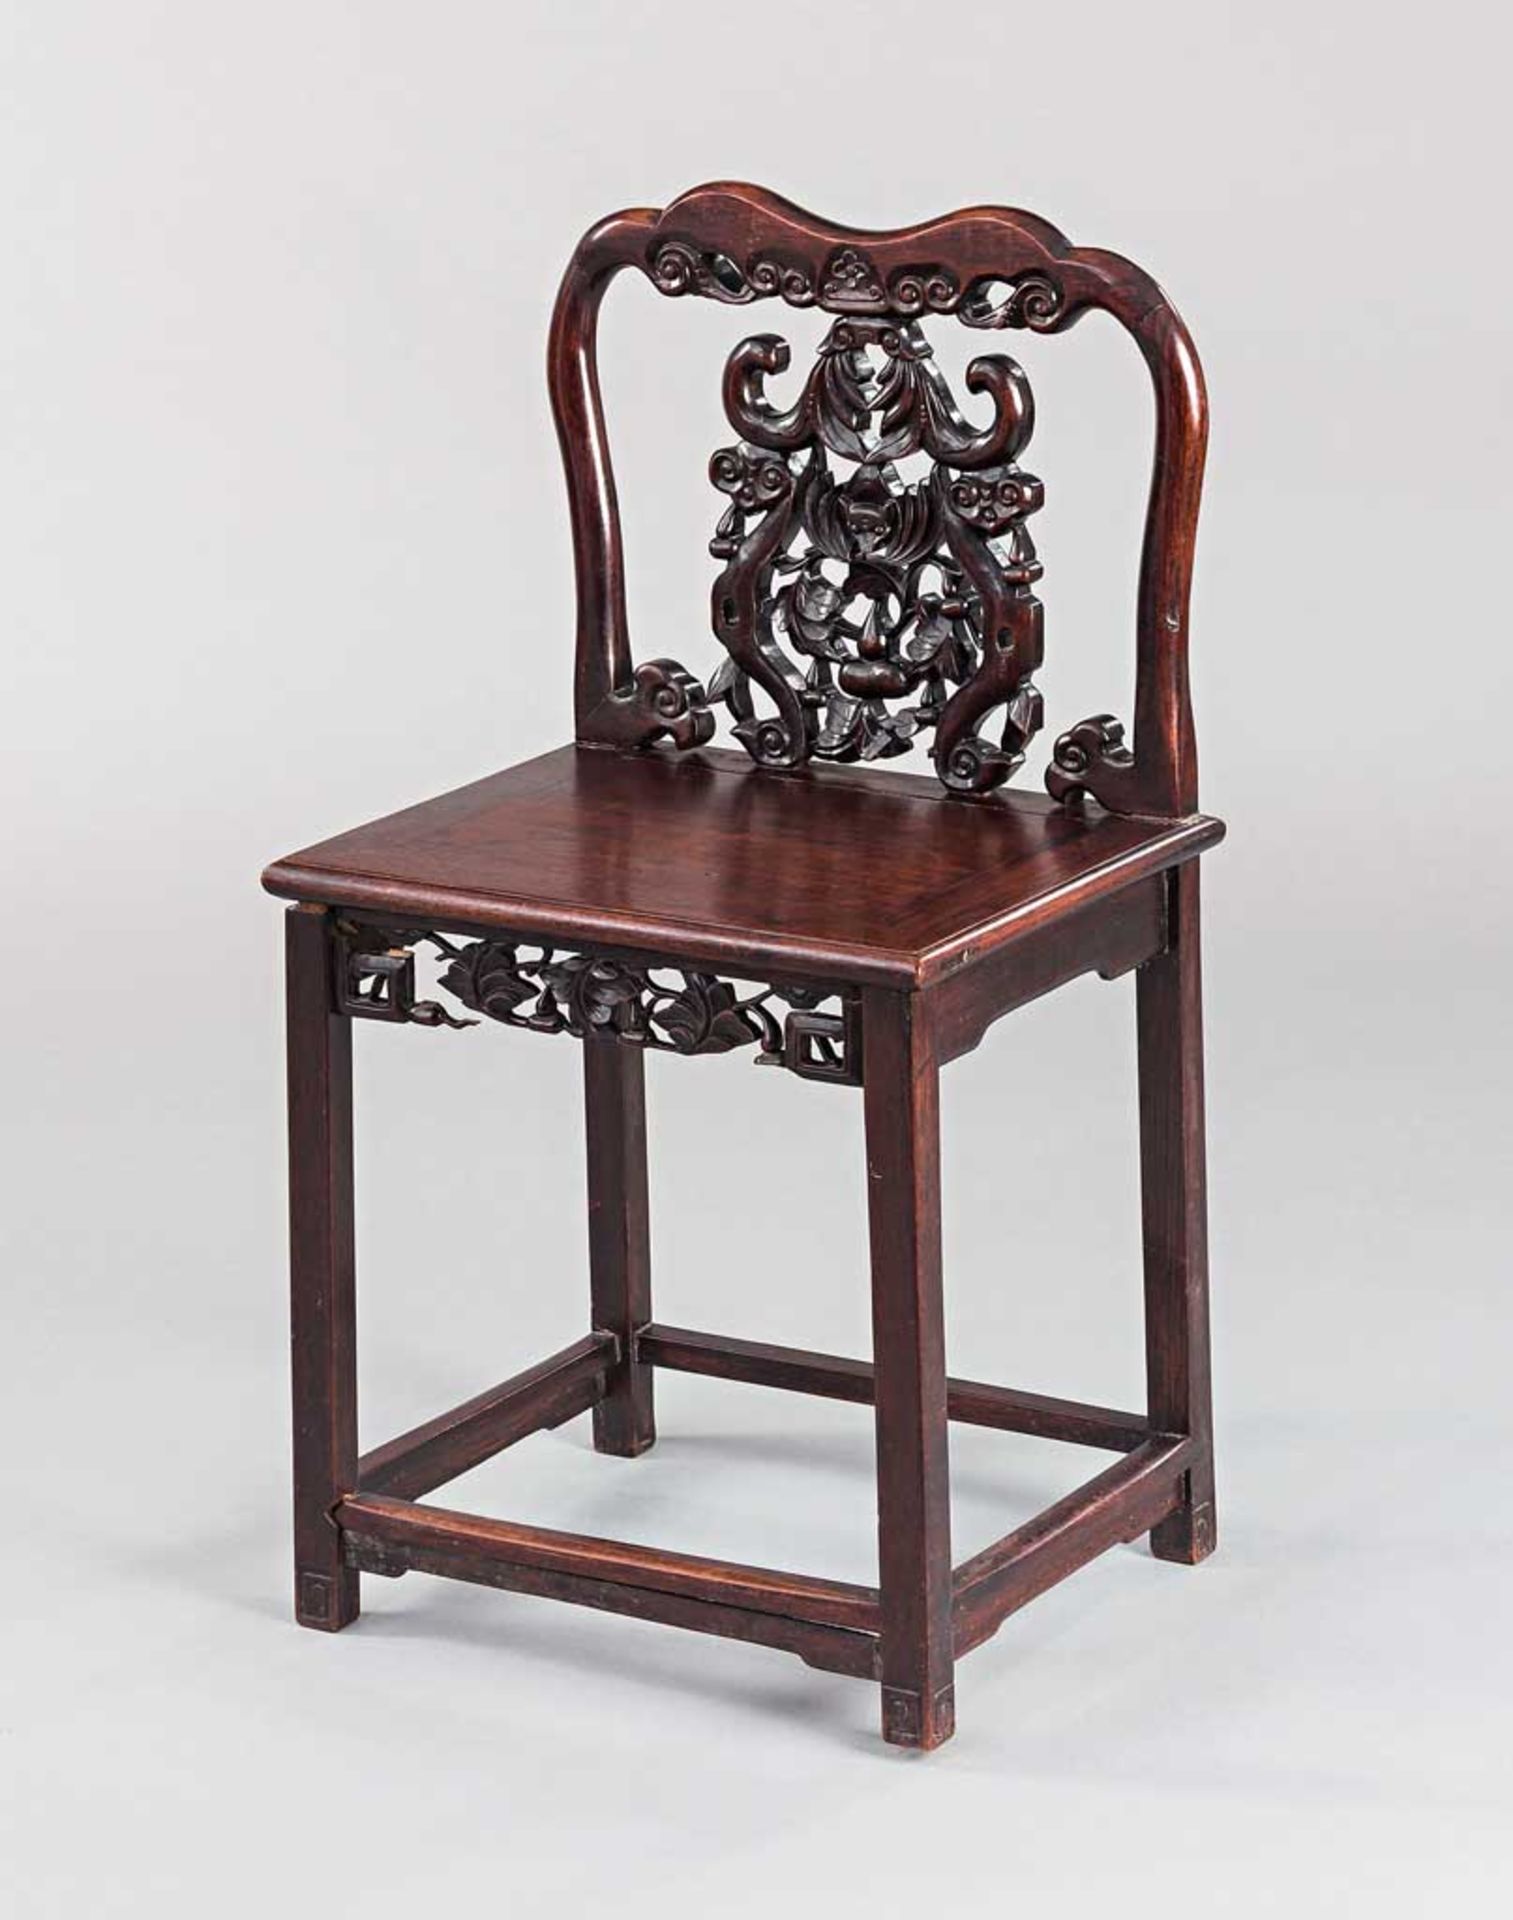 Stuhl mit Schnitzerei. Brettsitz. China. H 90 (52) cm